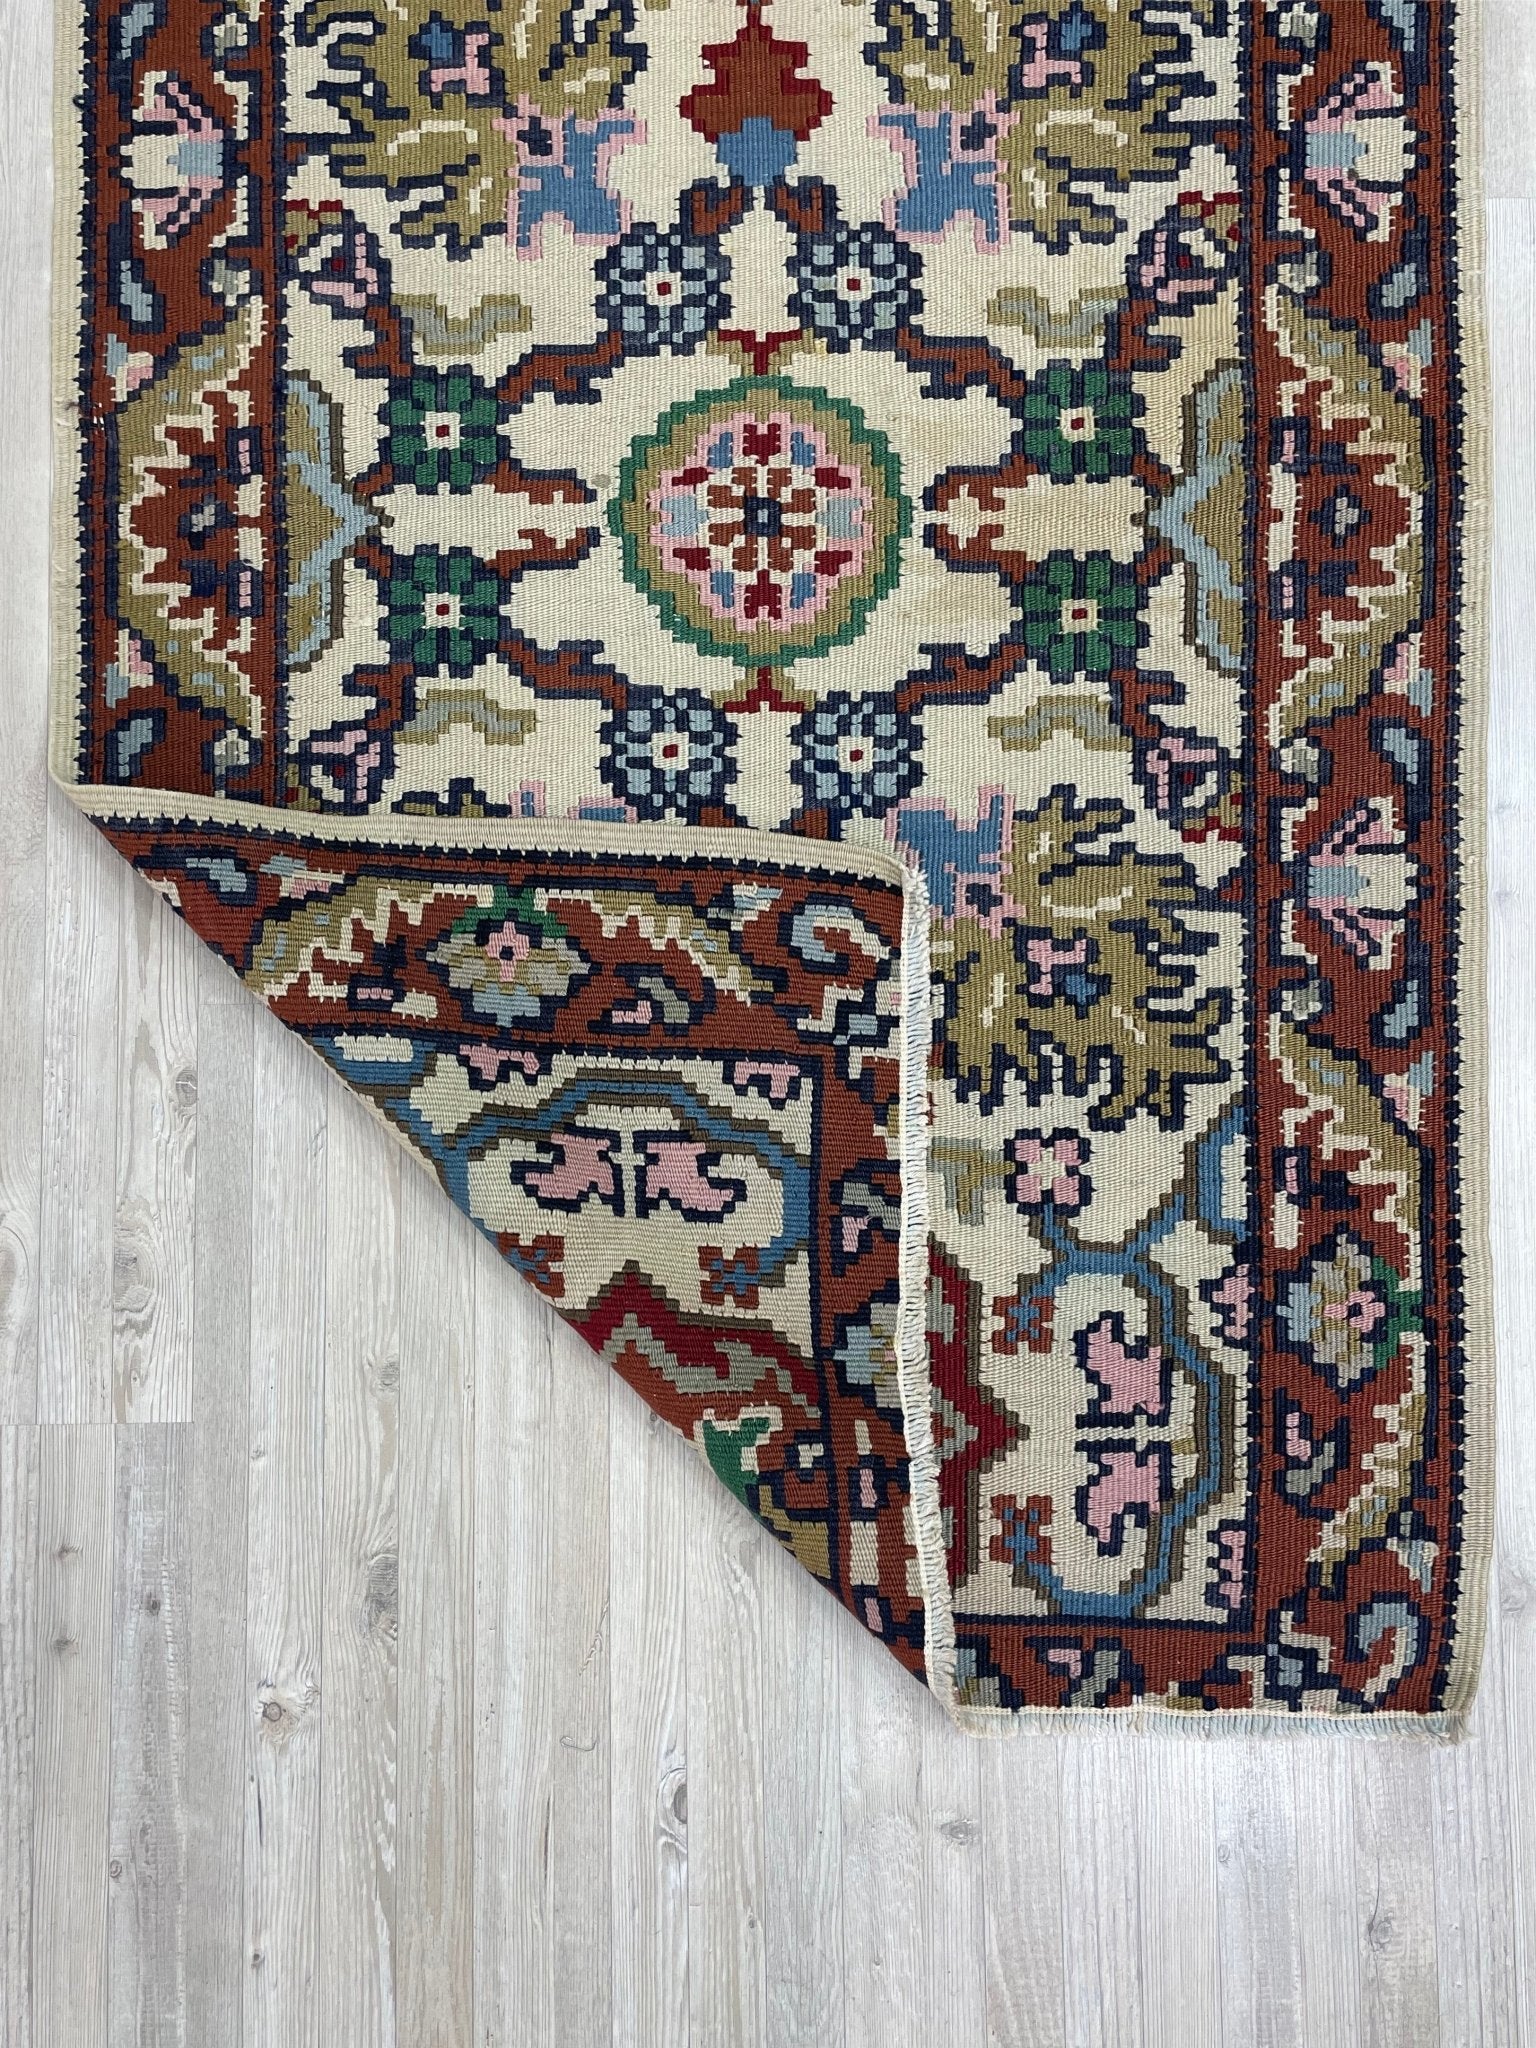 Turkish kilim mini vintage rug doormat bathroom mat san francisco bay area rug shopping online